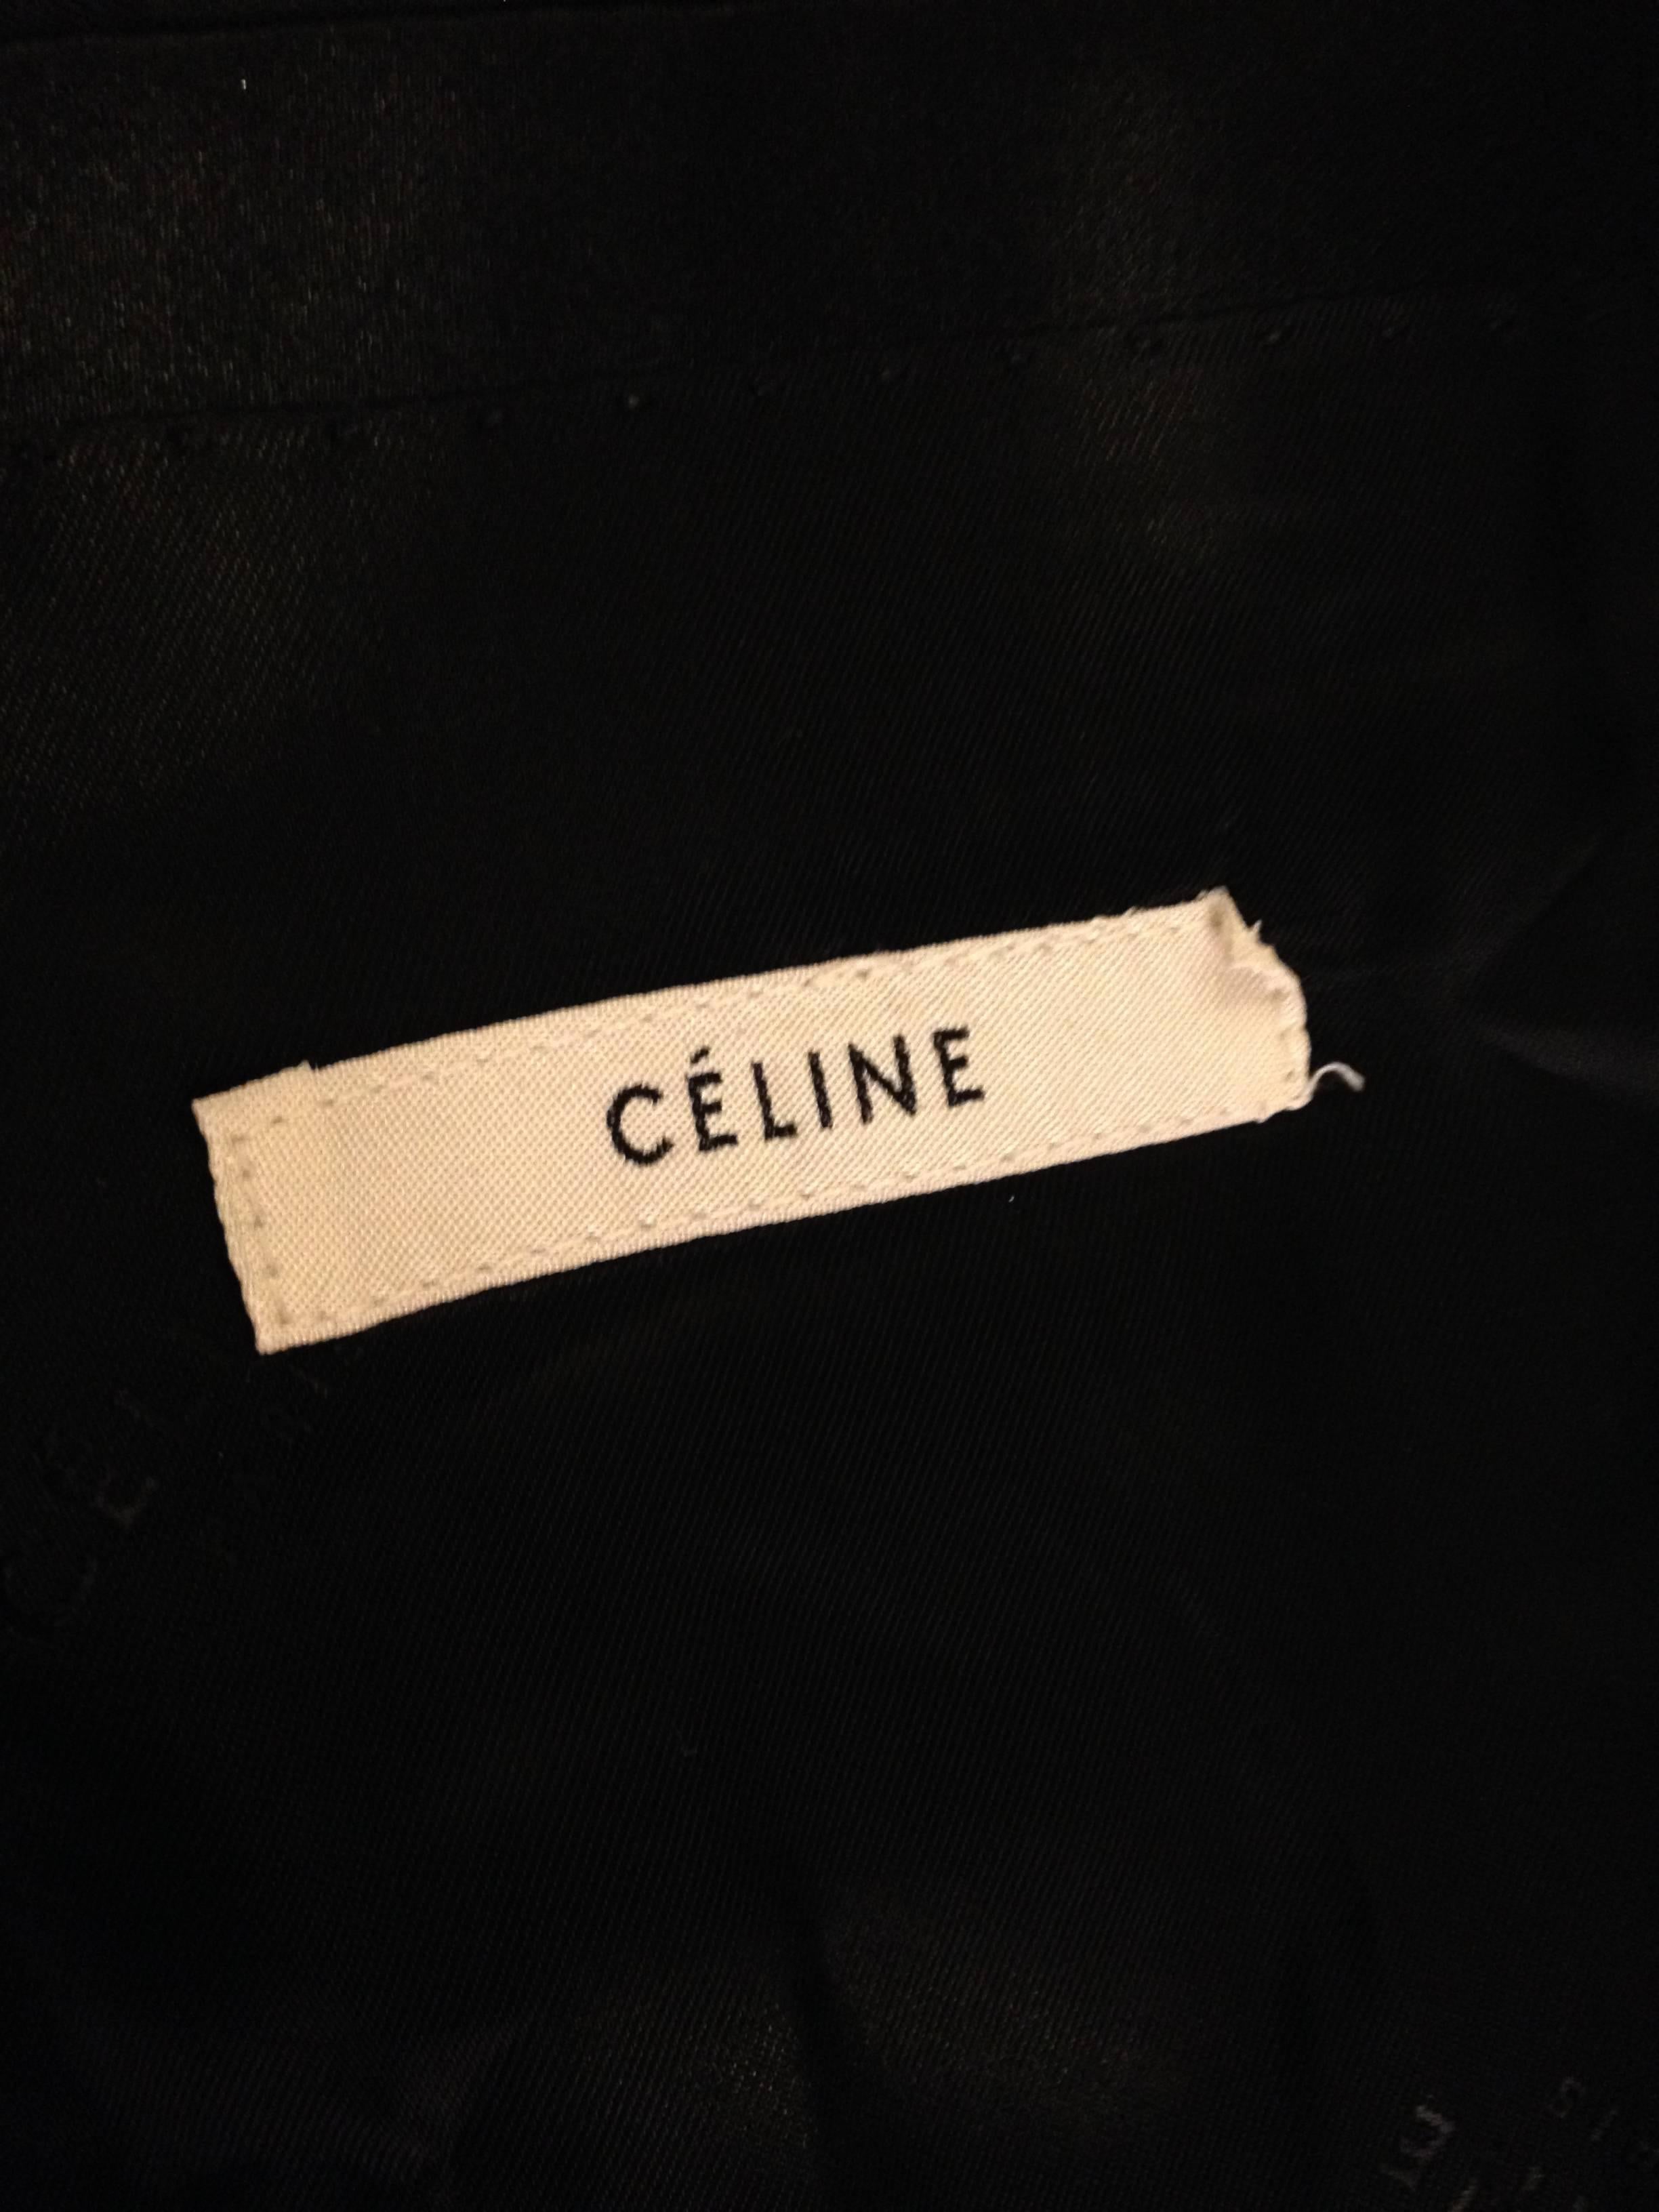 Celine Royal Blue Blazer with Black Satin Details 2